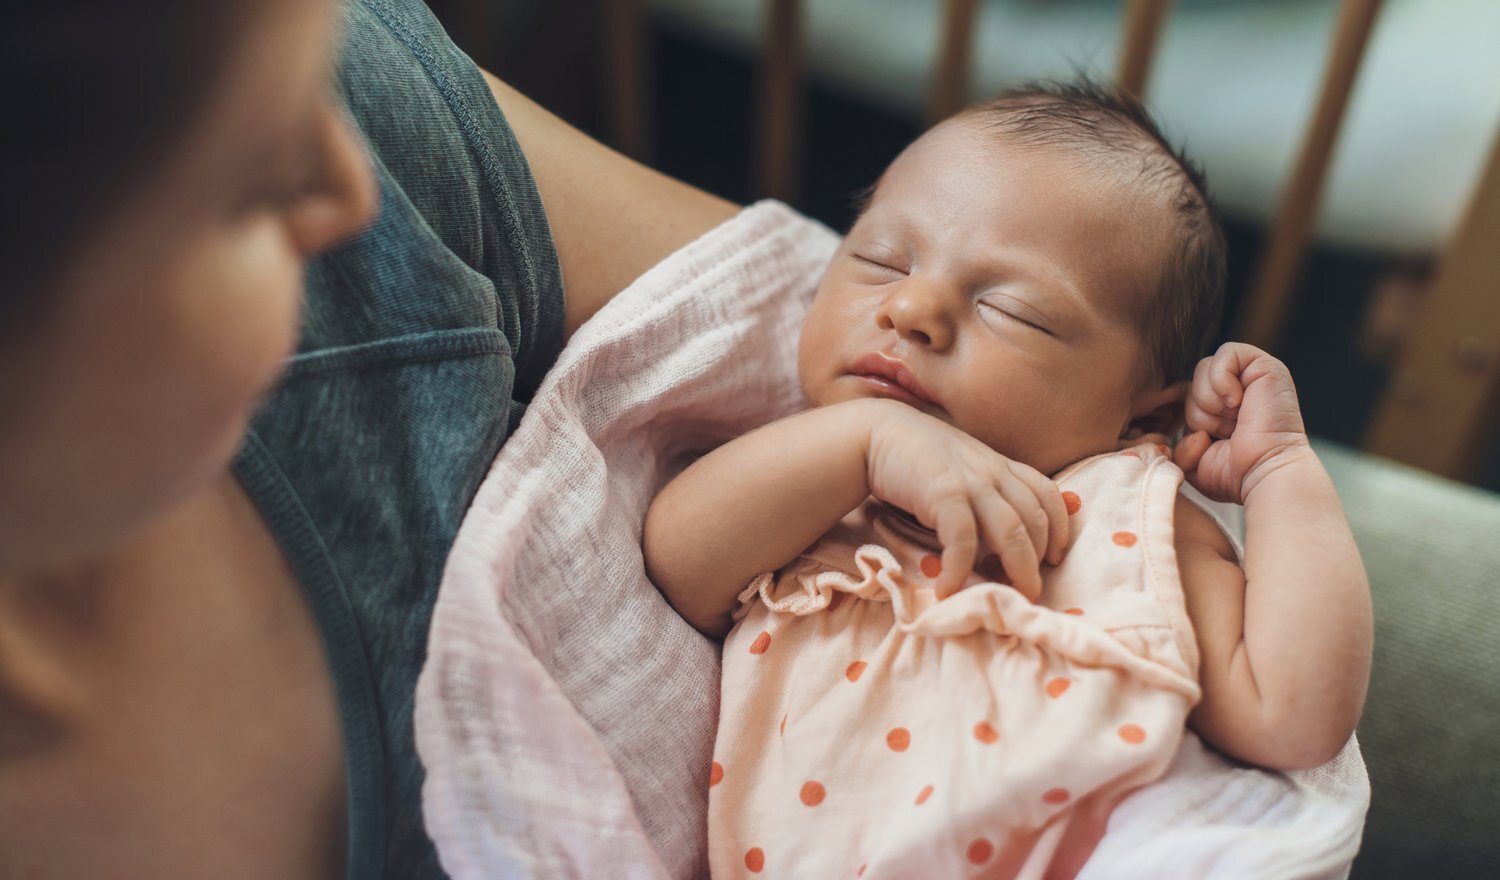 Учёные объяснили, почему мы баюкаем младенцев почти всегда на сгибе левой руки